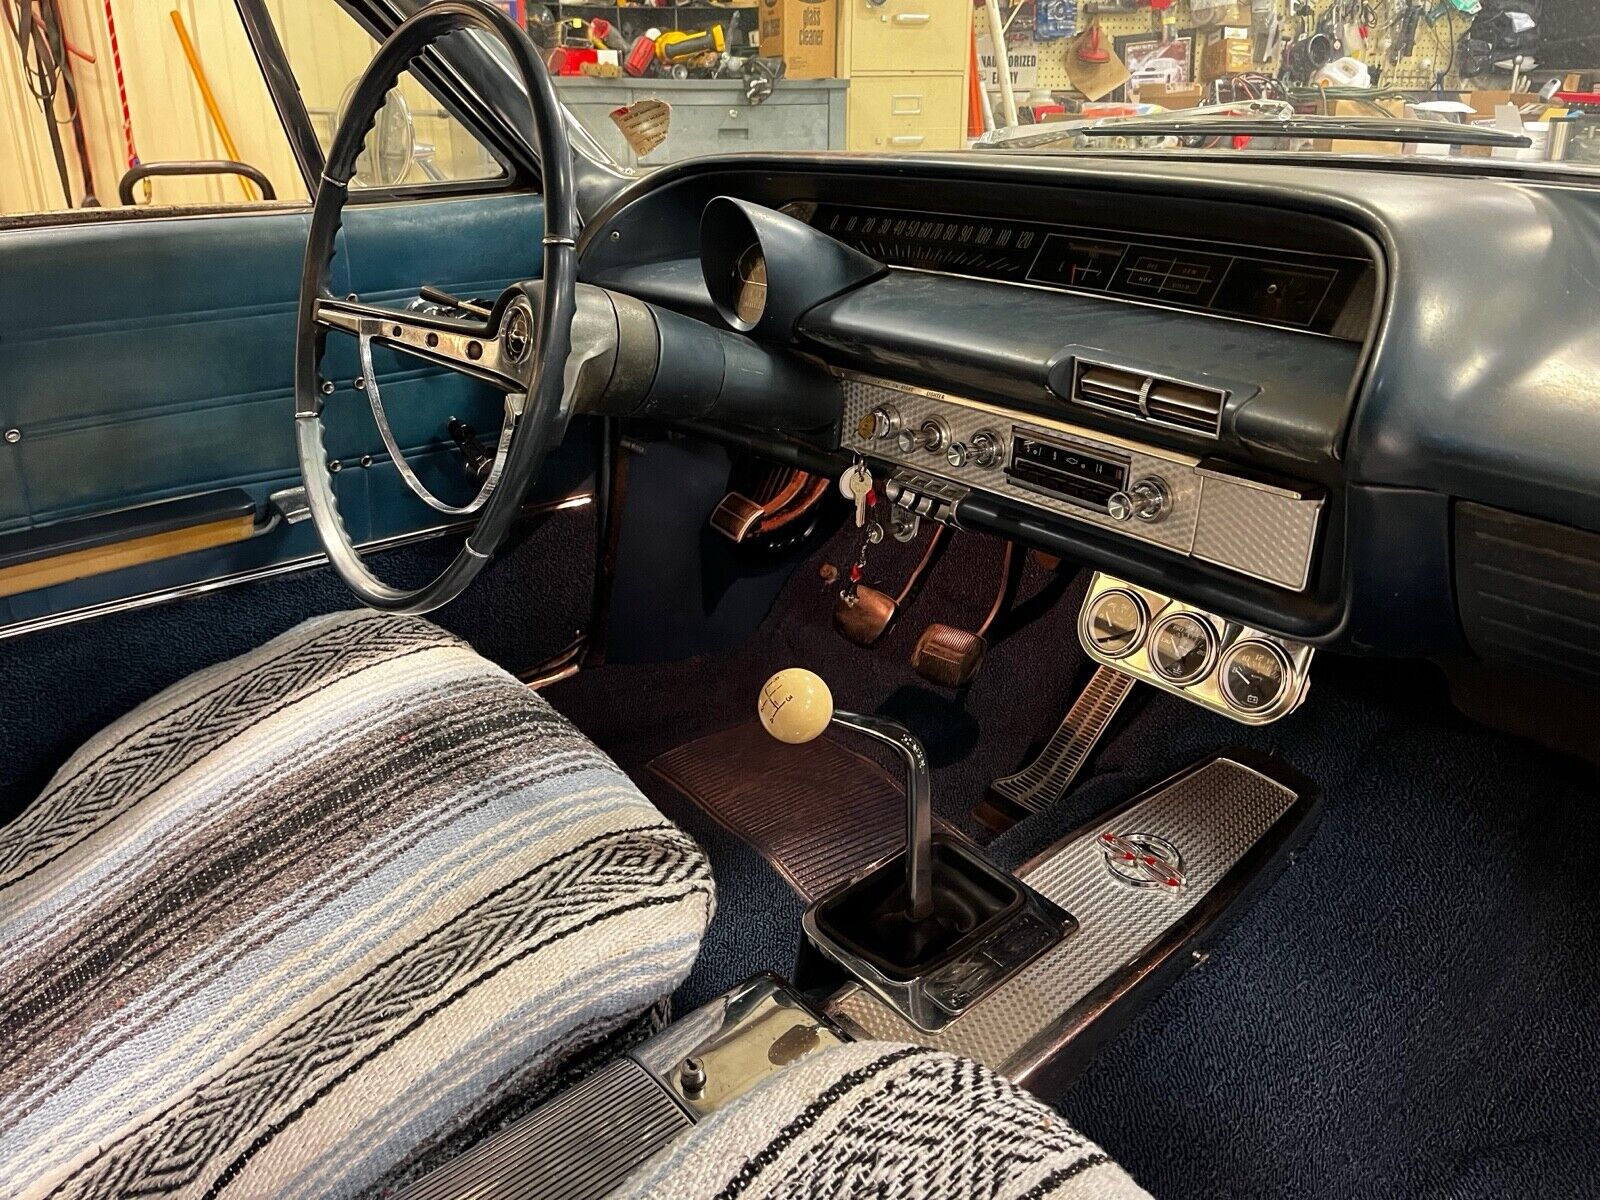 1963 Impala SS Revival